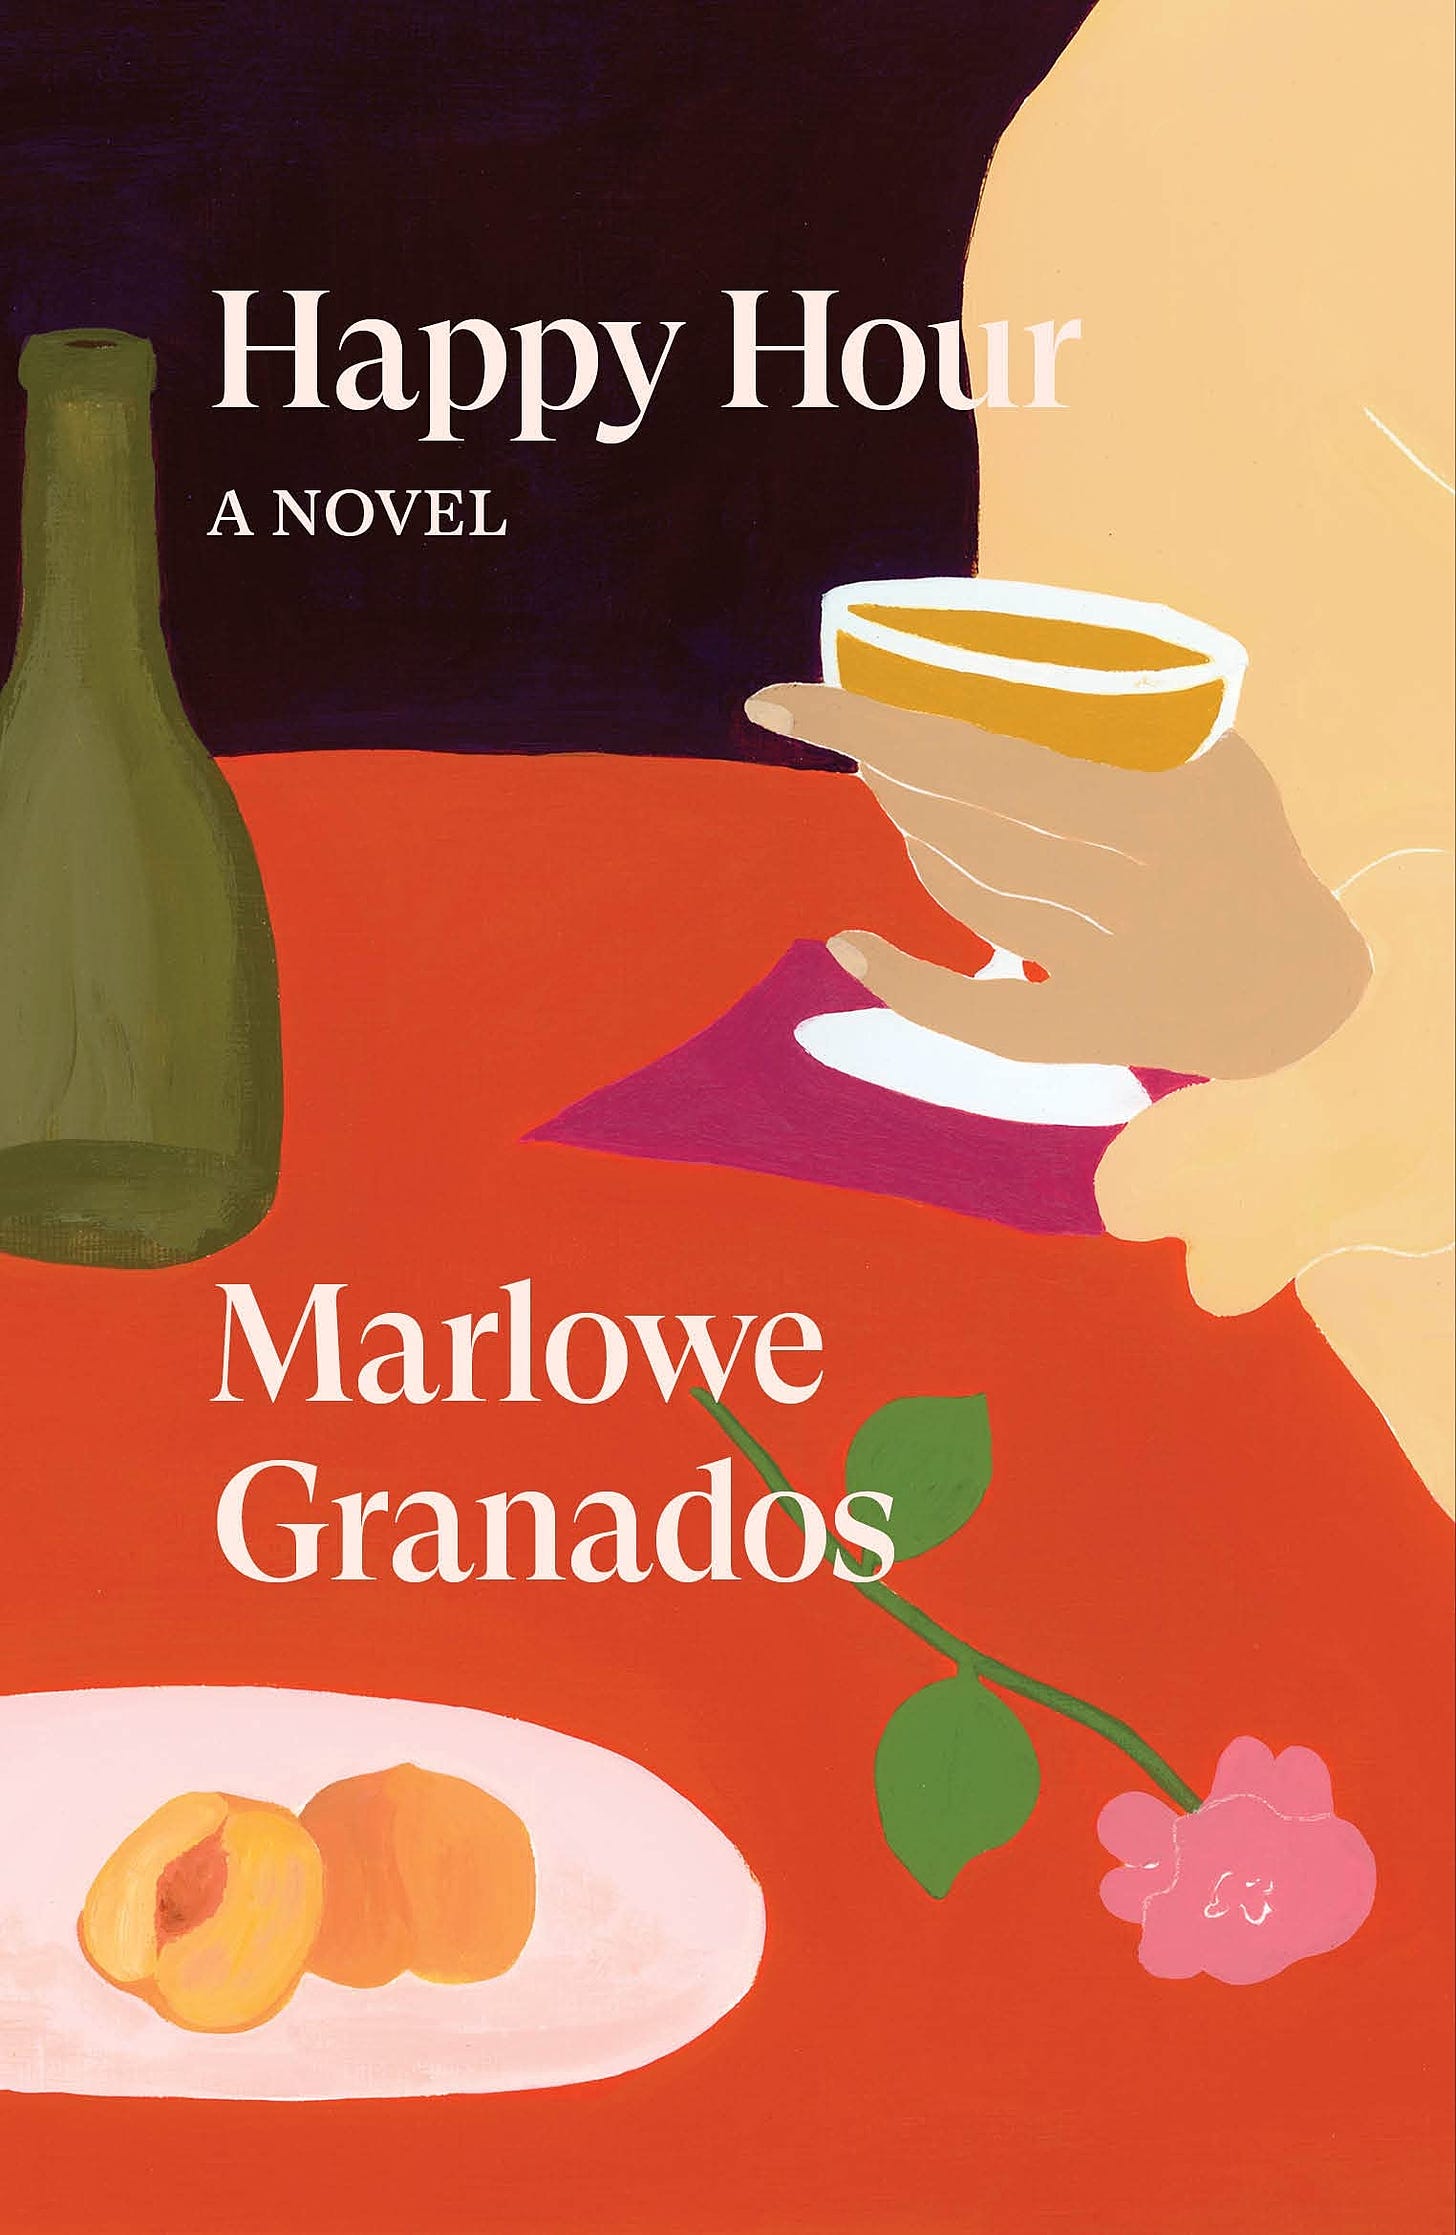 Happy Hour: A Novel: Granados, Marlowe: 9781839764011: Amazon.com: Books